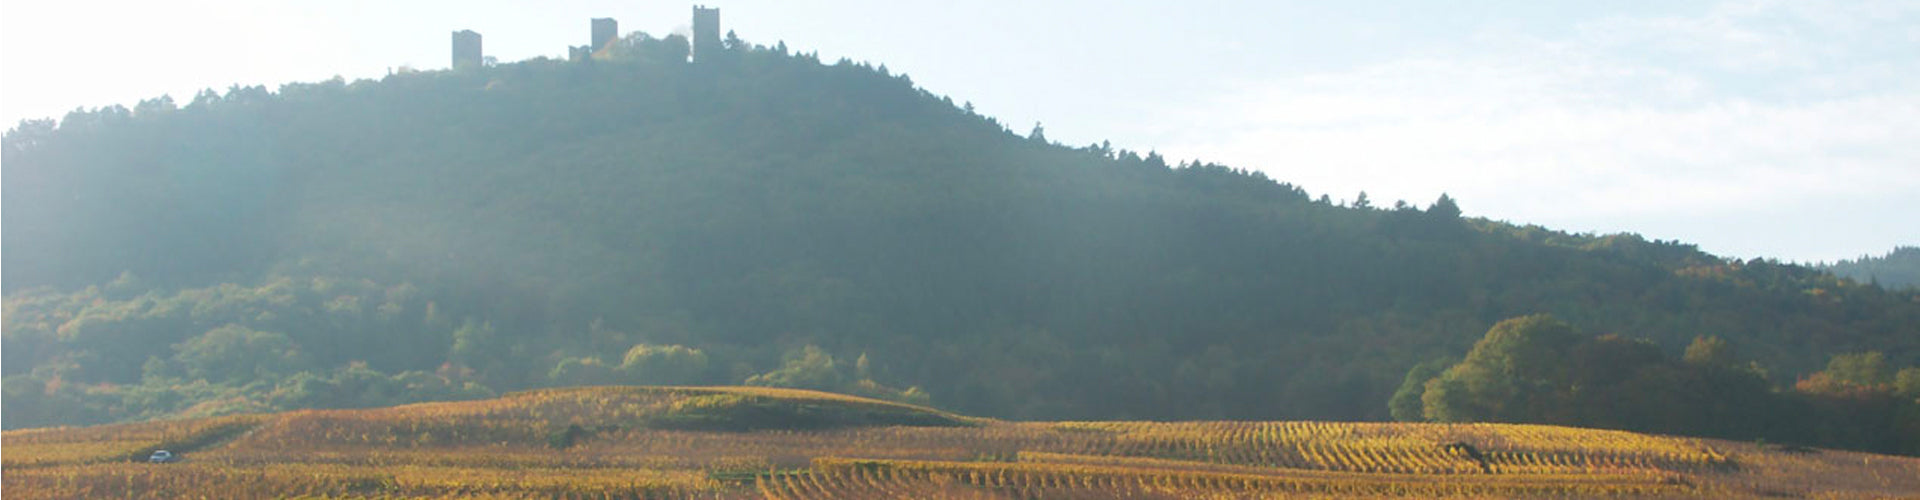 Vineyards of Bruno Sorg near Eguisheim in Alsace